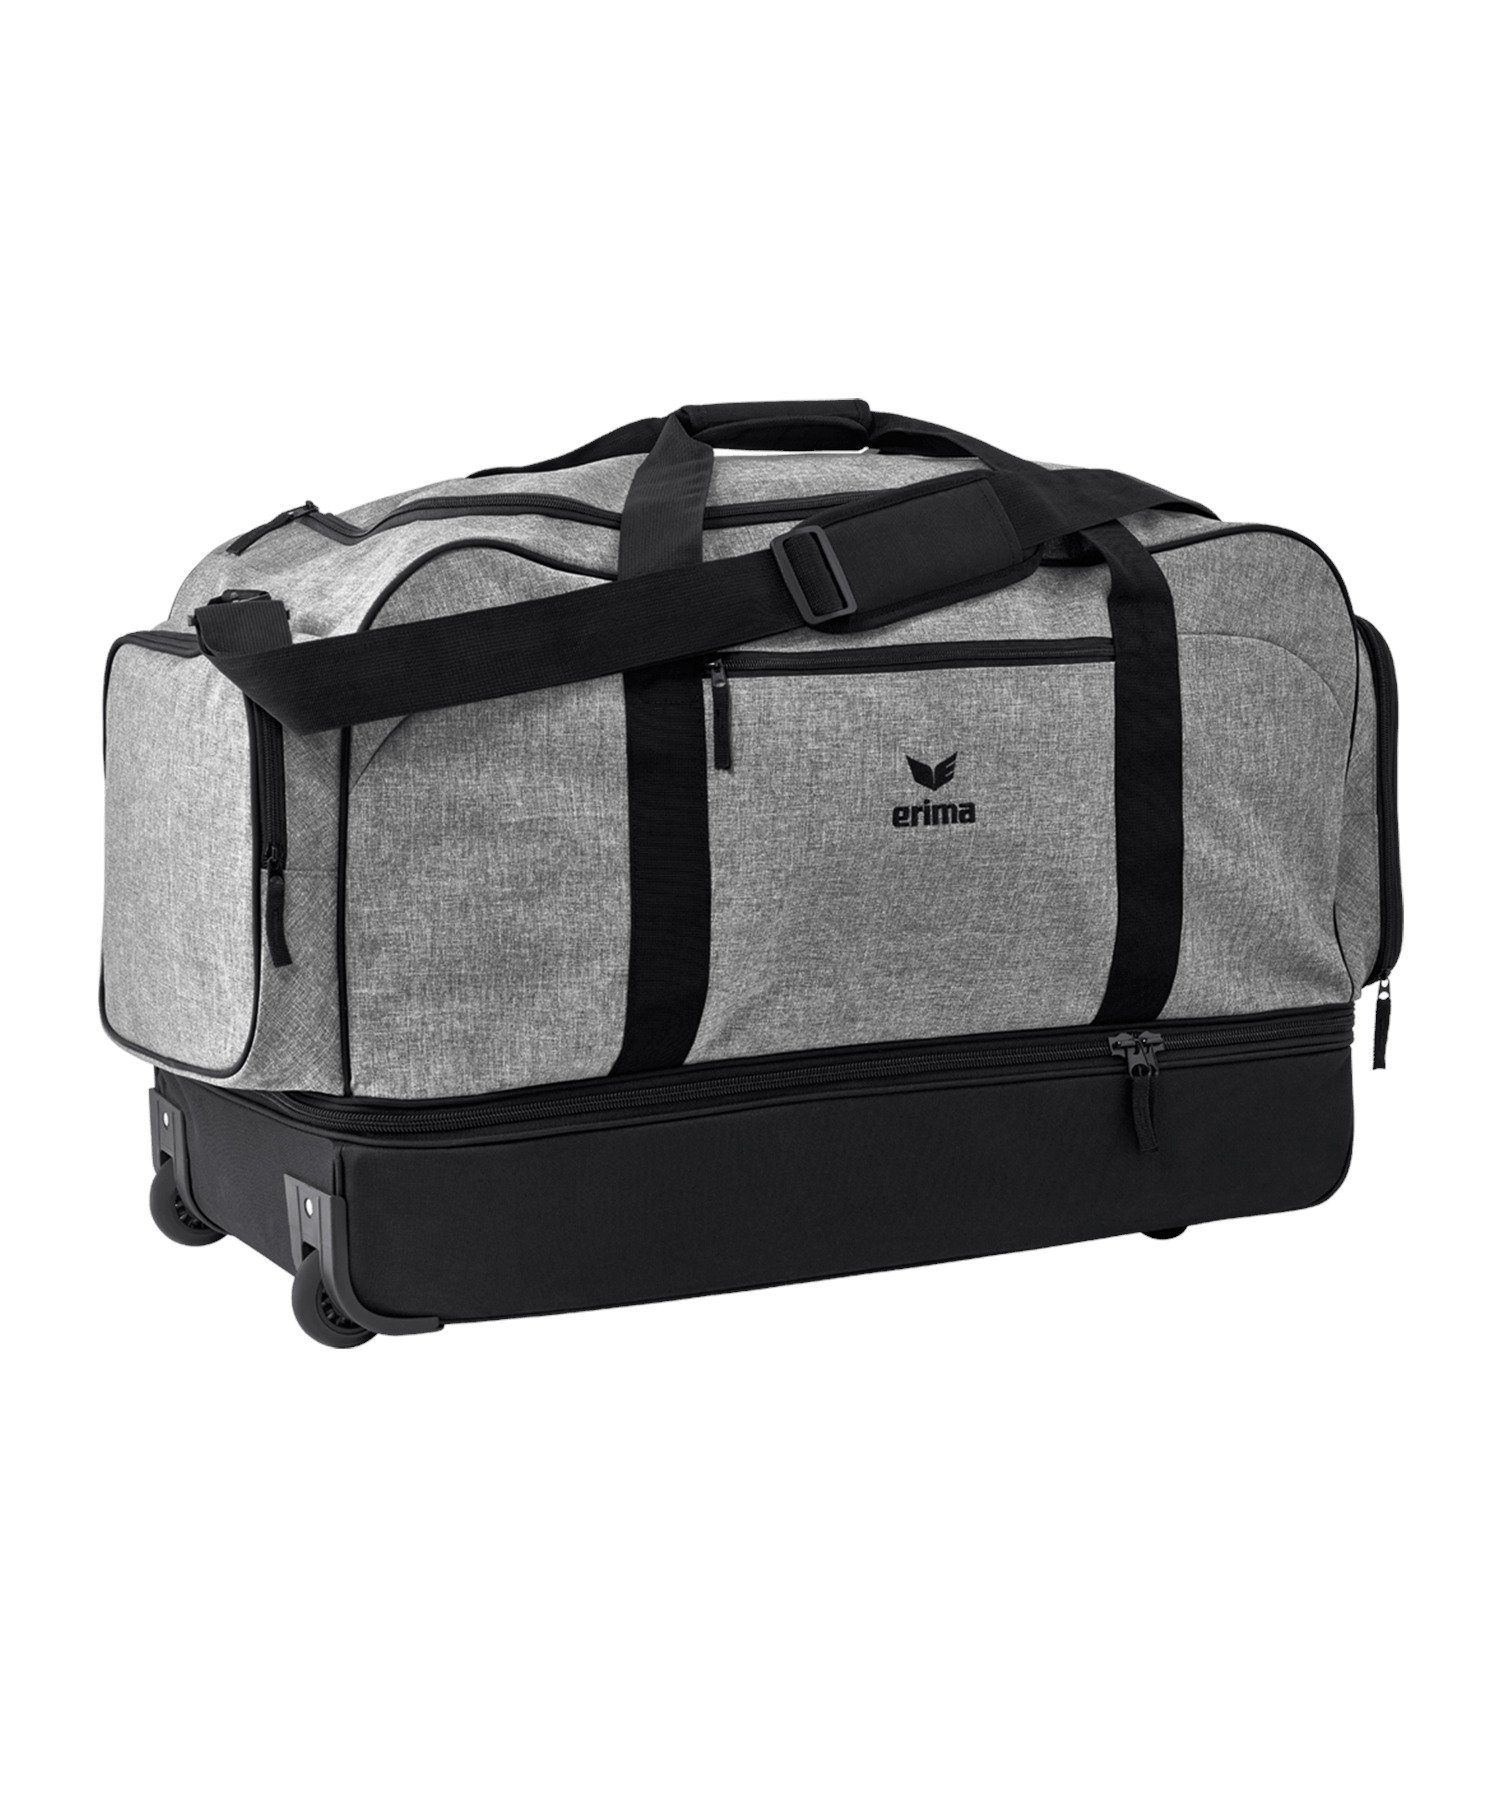 Erima Freizeittasche Sportsbag Tasche Größe XL, Schultergurt